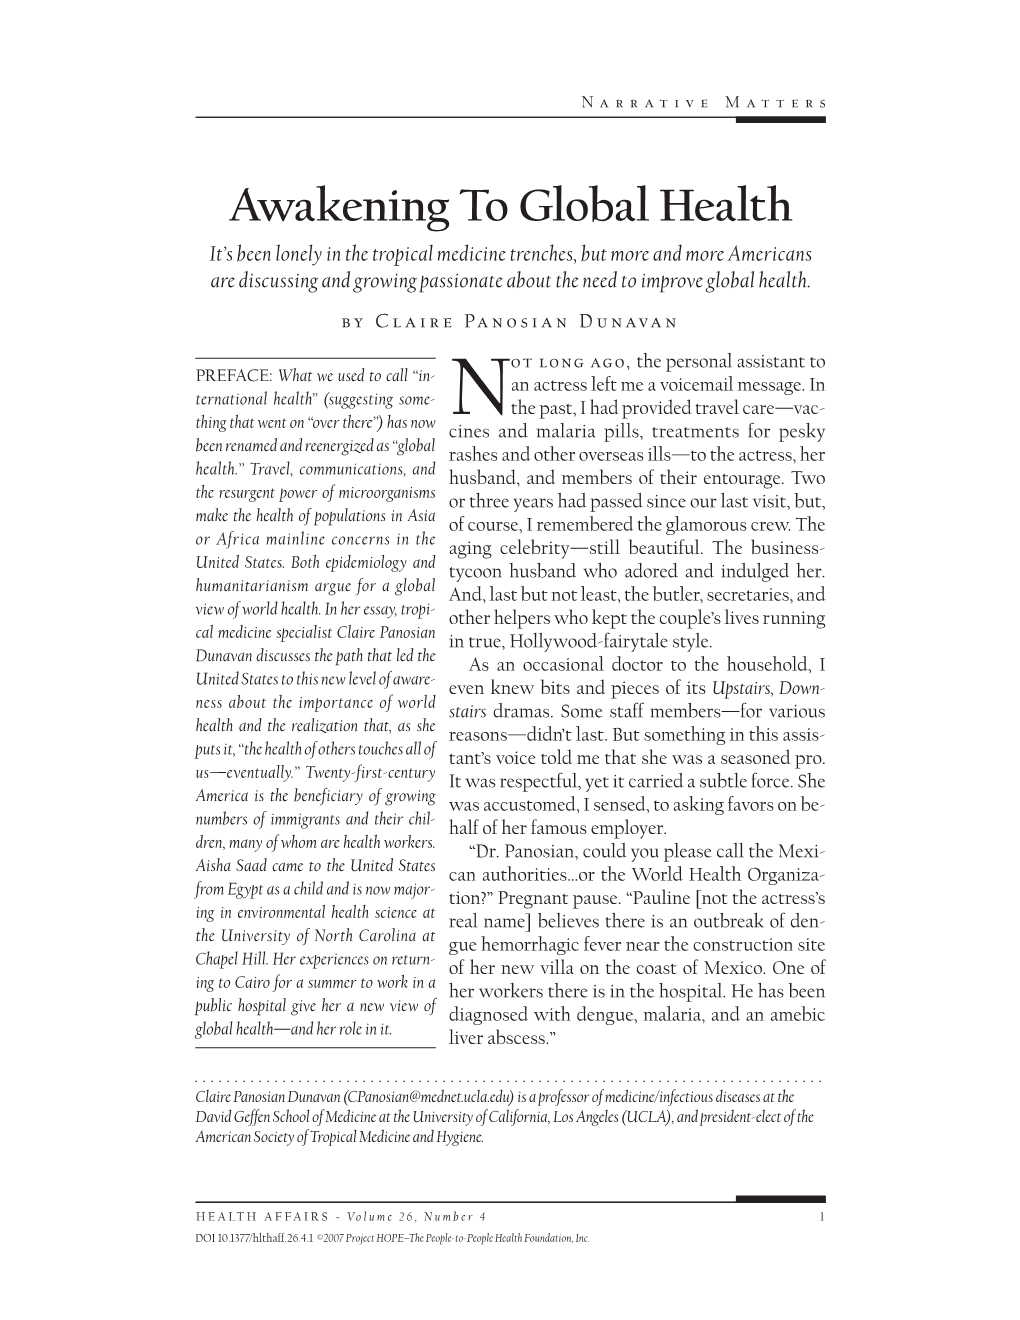 Awakening to Global Health